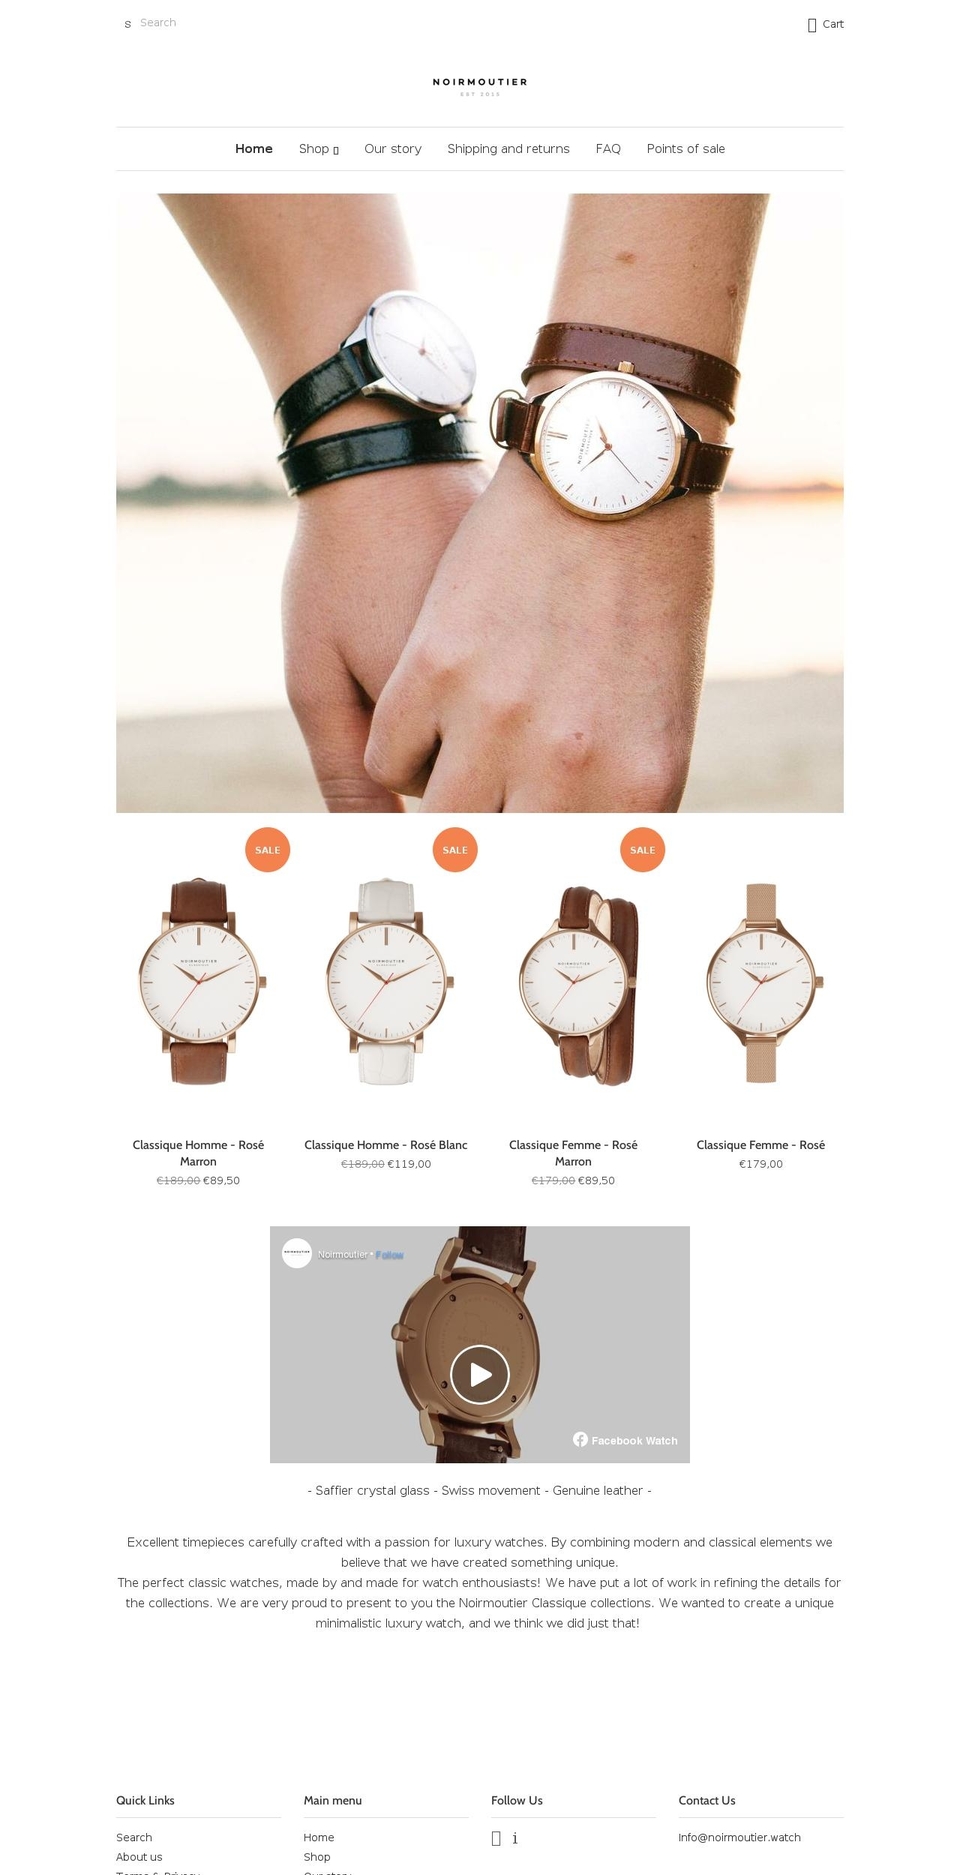 Official Noirmoutier Shopify theme site example noirmoutier-watches.com